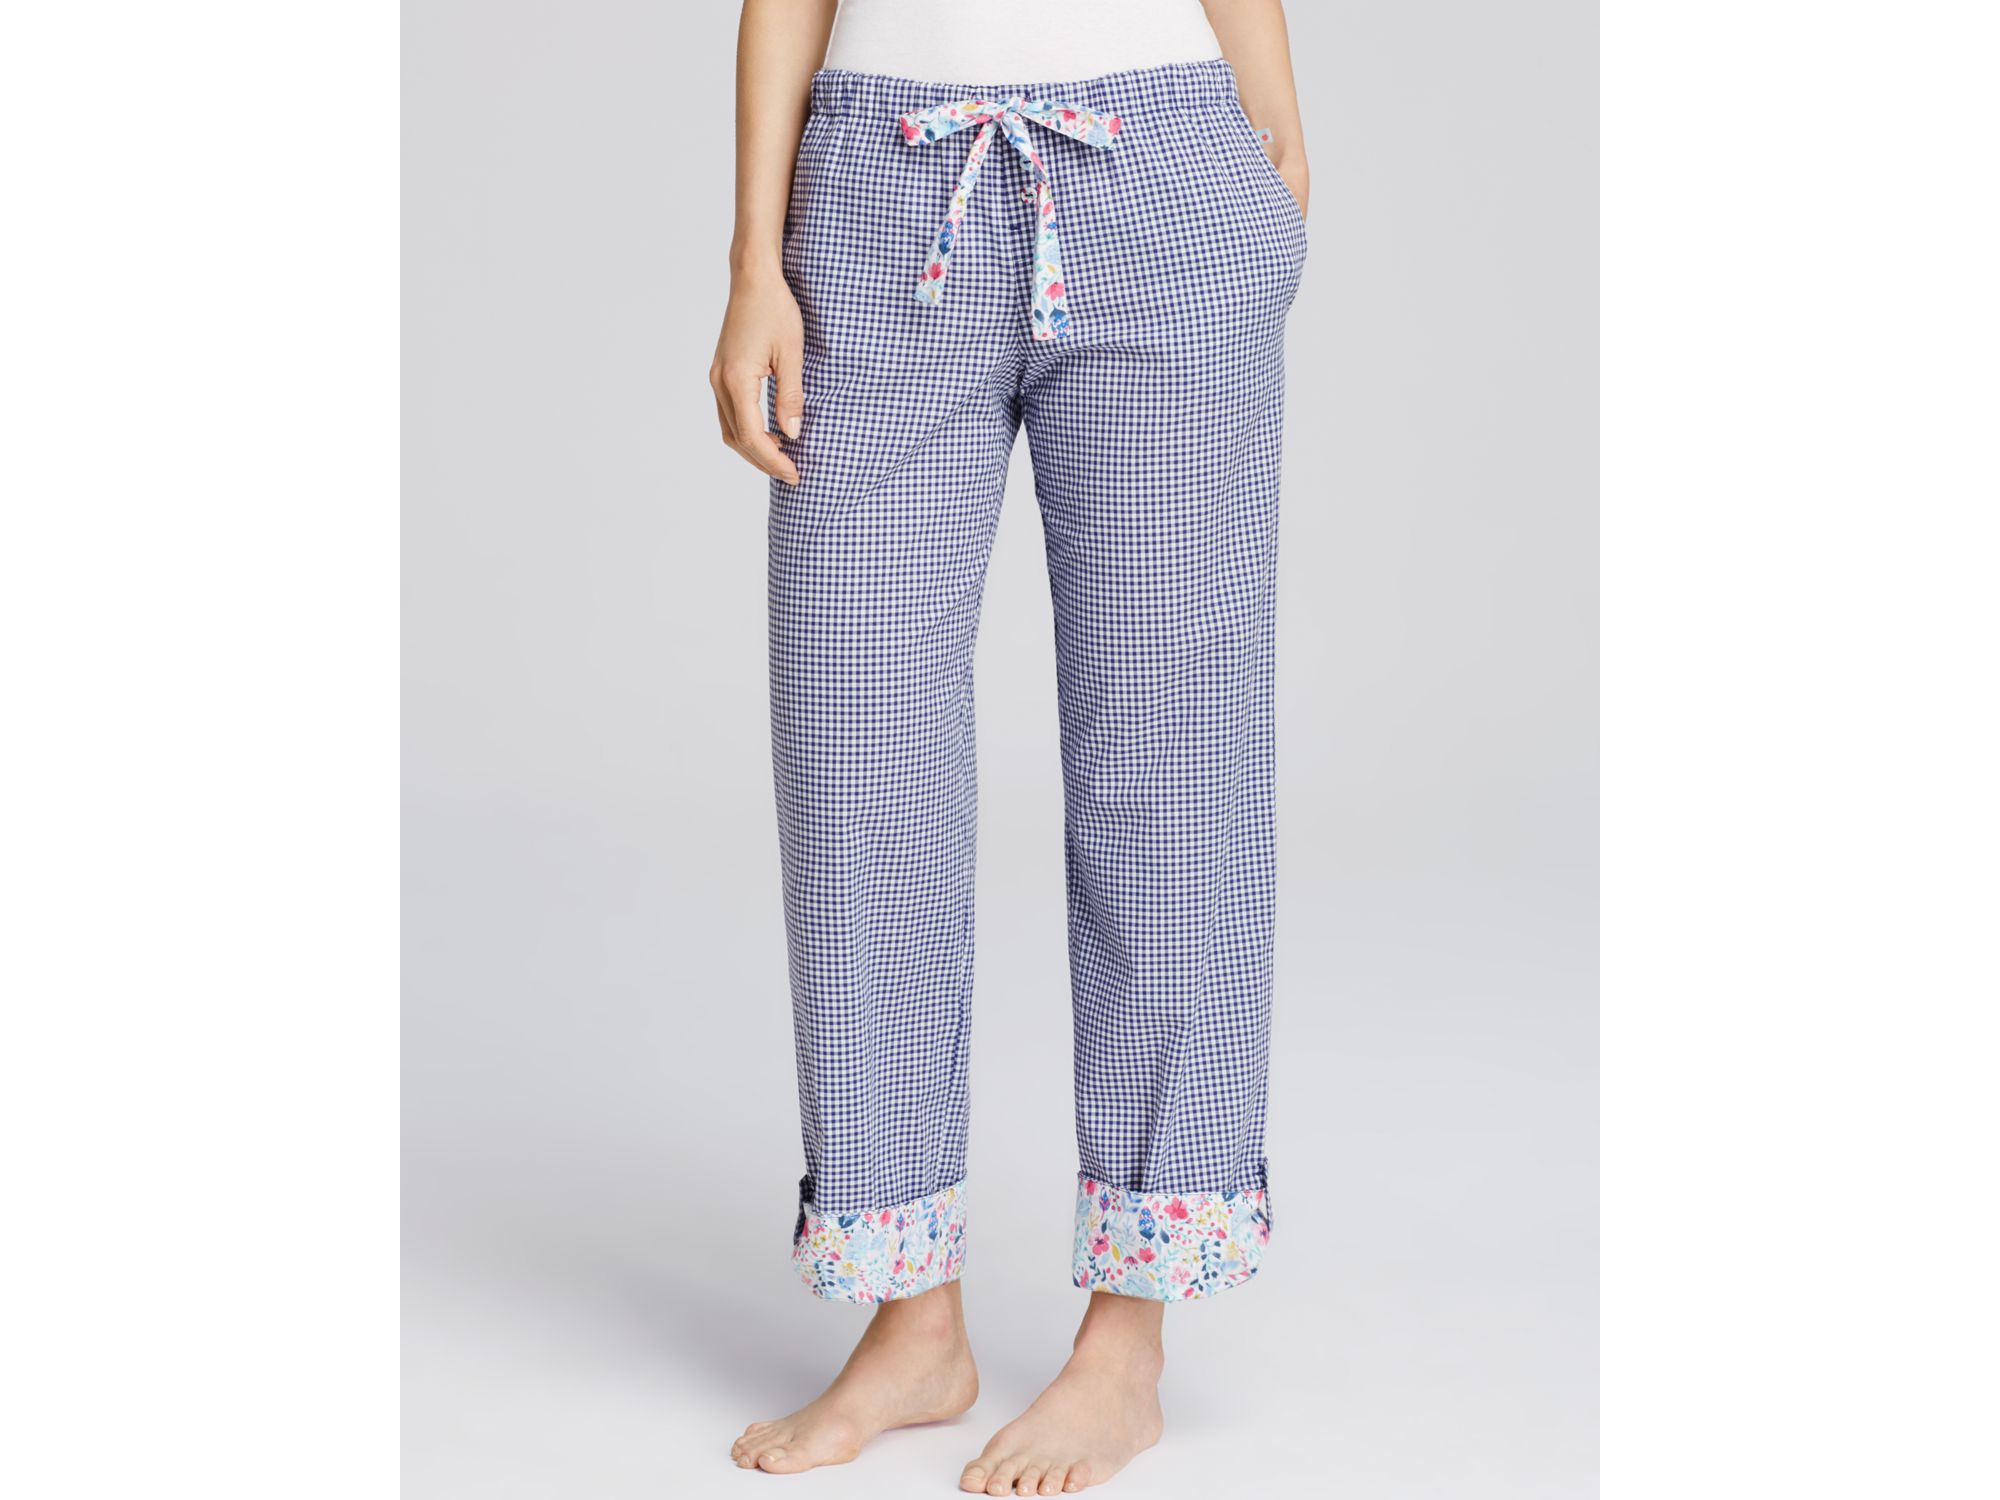 Lyst - Jane & Bleecker New York Gingham Batiste Pajama Pants in Blue